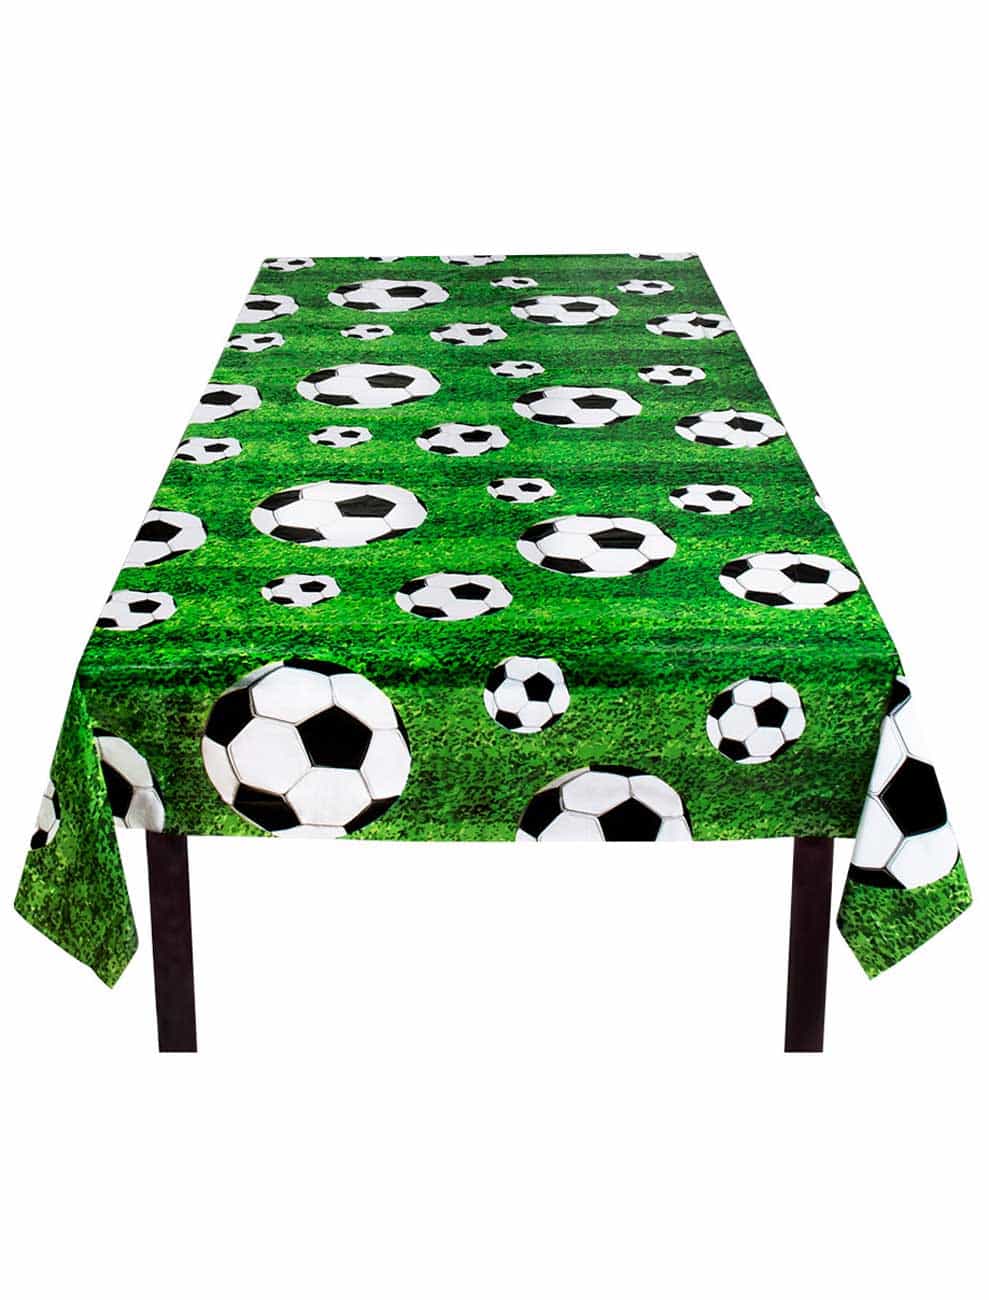 Tischdecke Fußball 120 x 180 cm Kinder grün